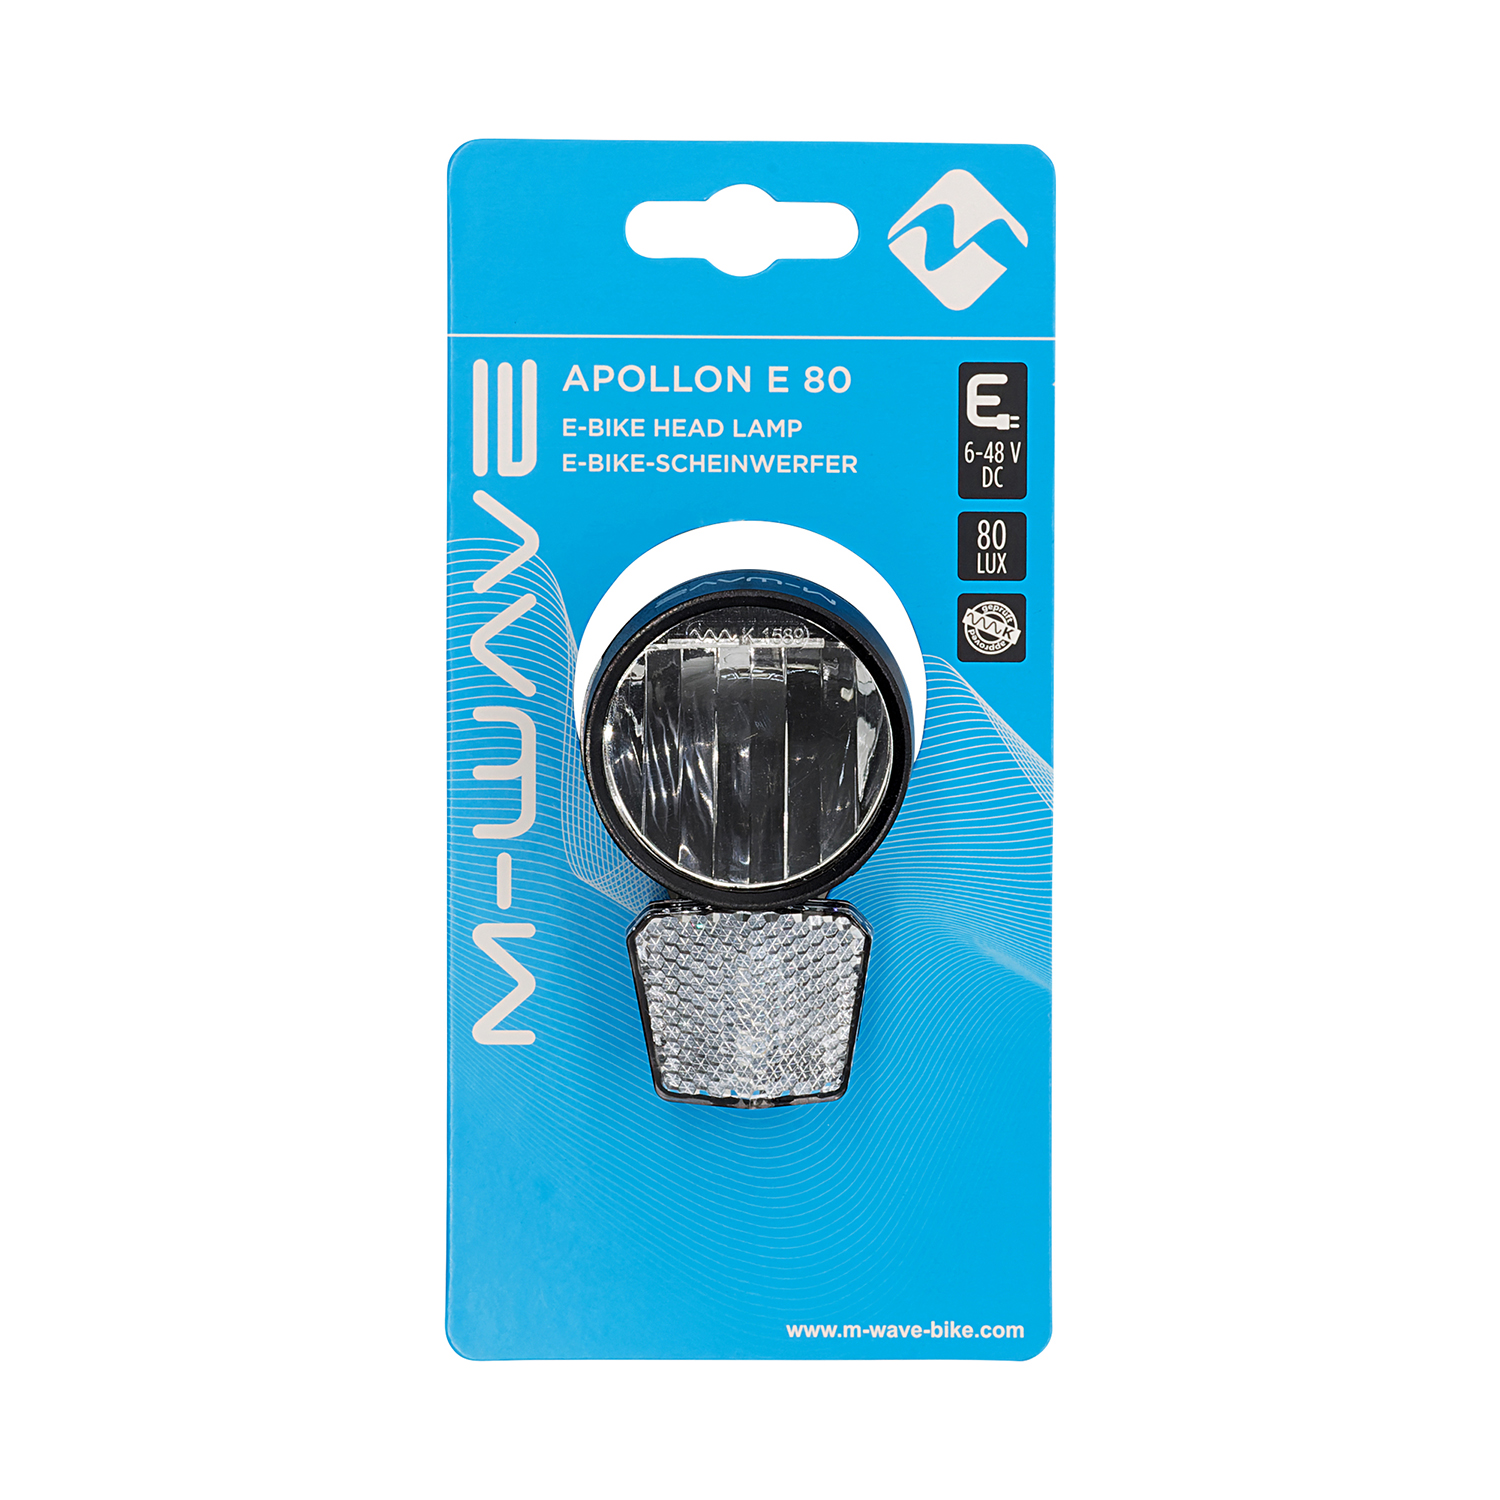 LED-Scheinwerfer APOLLON 80 E ohne Schalter für E-BIKEs in schwarz